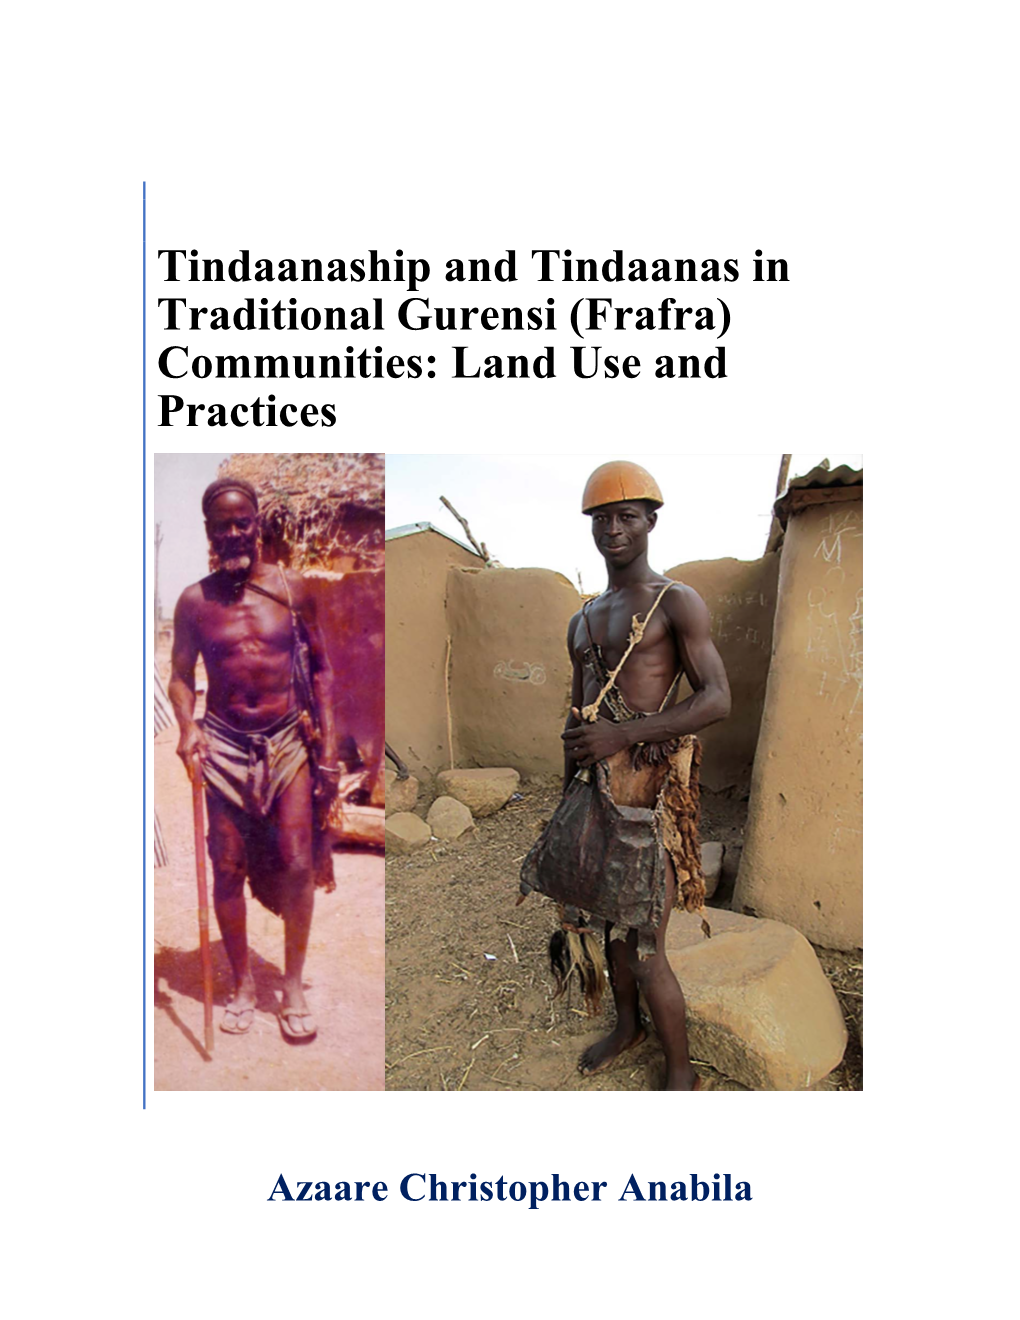 Tindaanaship and Land Use Among the Gurensi People of Ghana